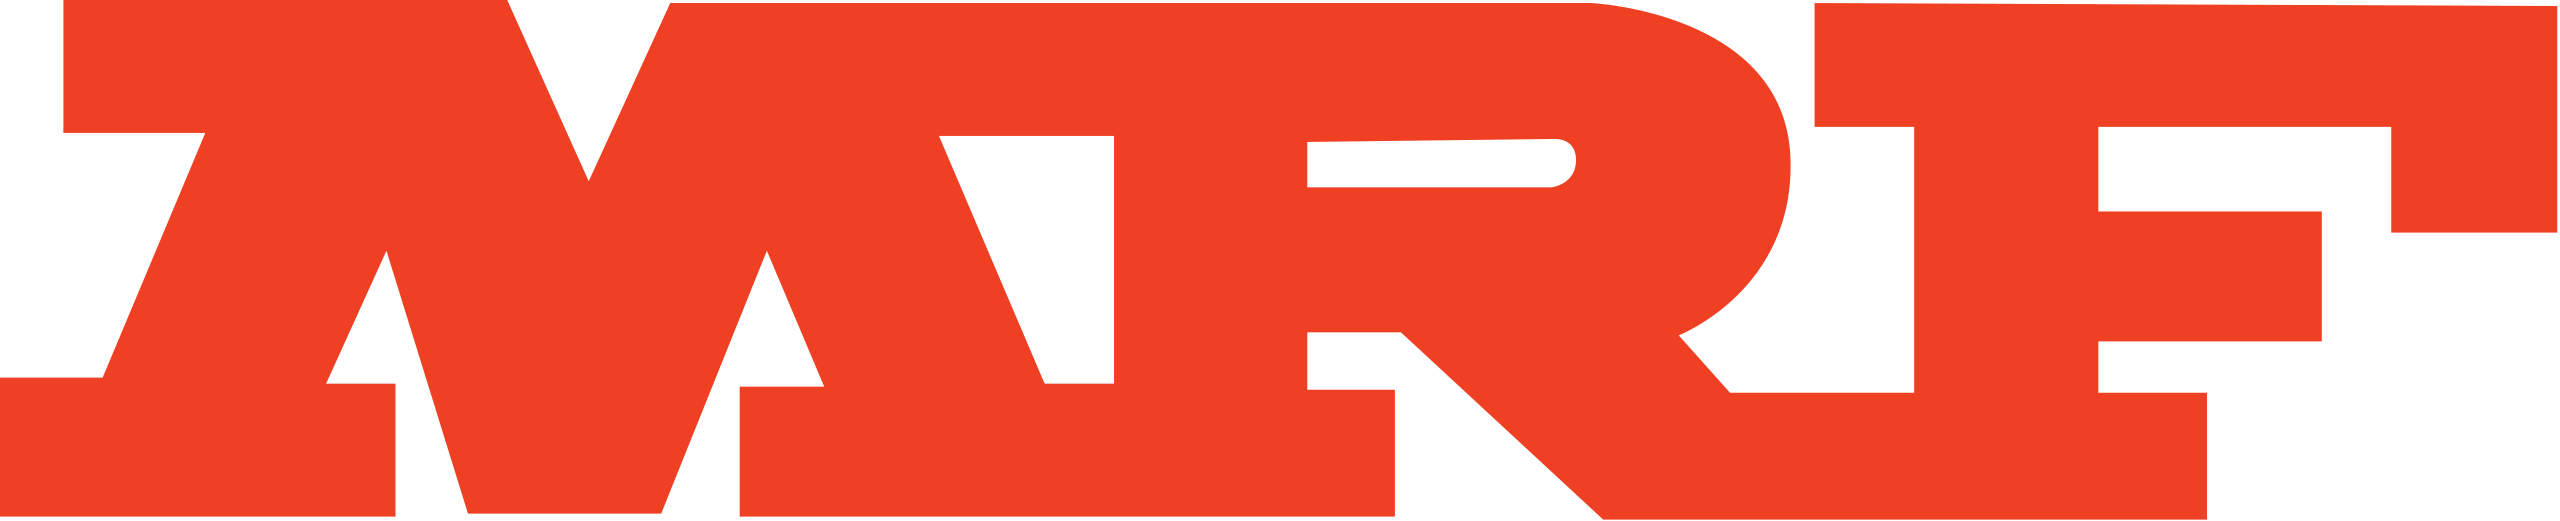 Rebranding logo design for the brand MRF tyres | Behance :: Behance